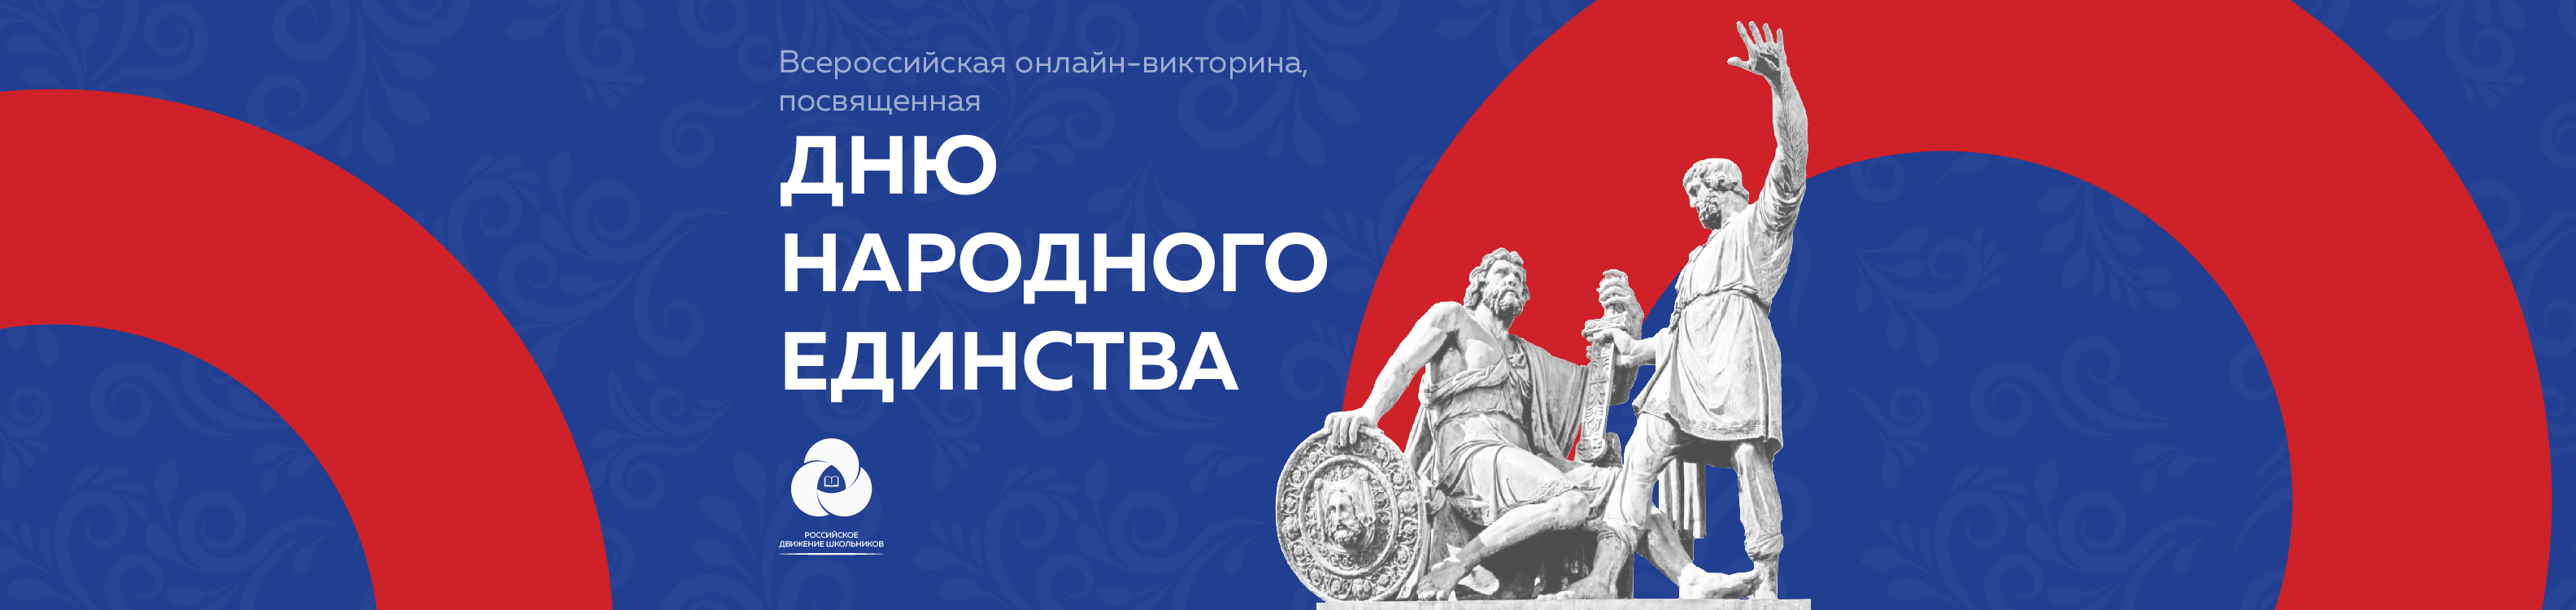 Всероссийская онлайн-викторина, посвящённая Дню народного единства